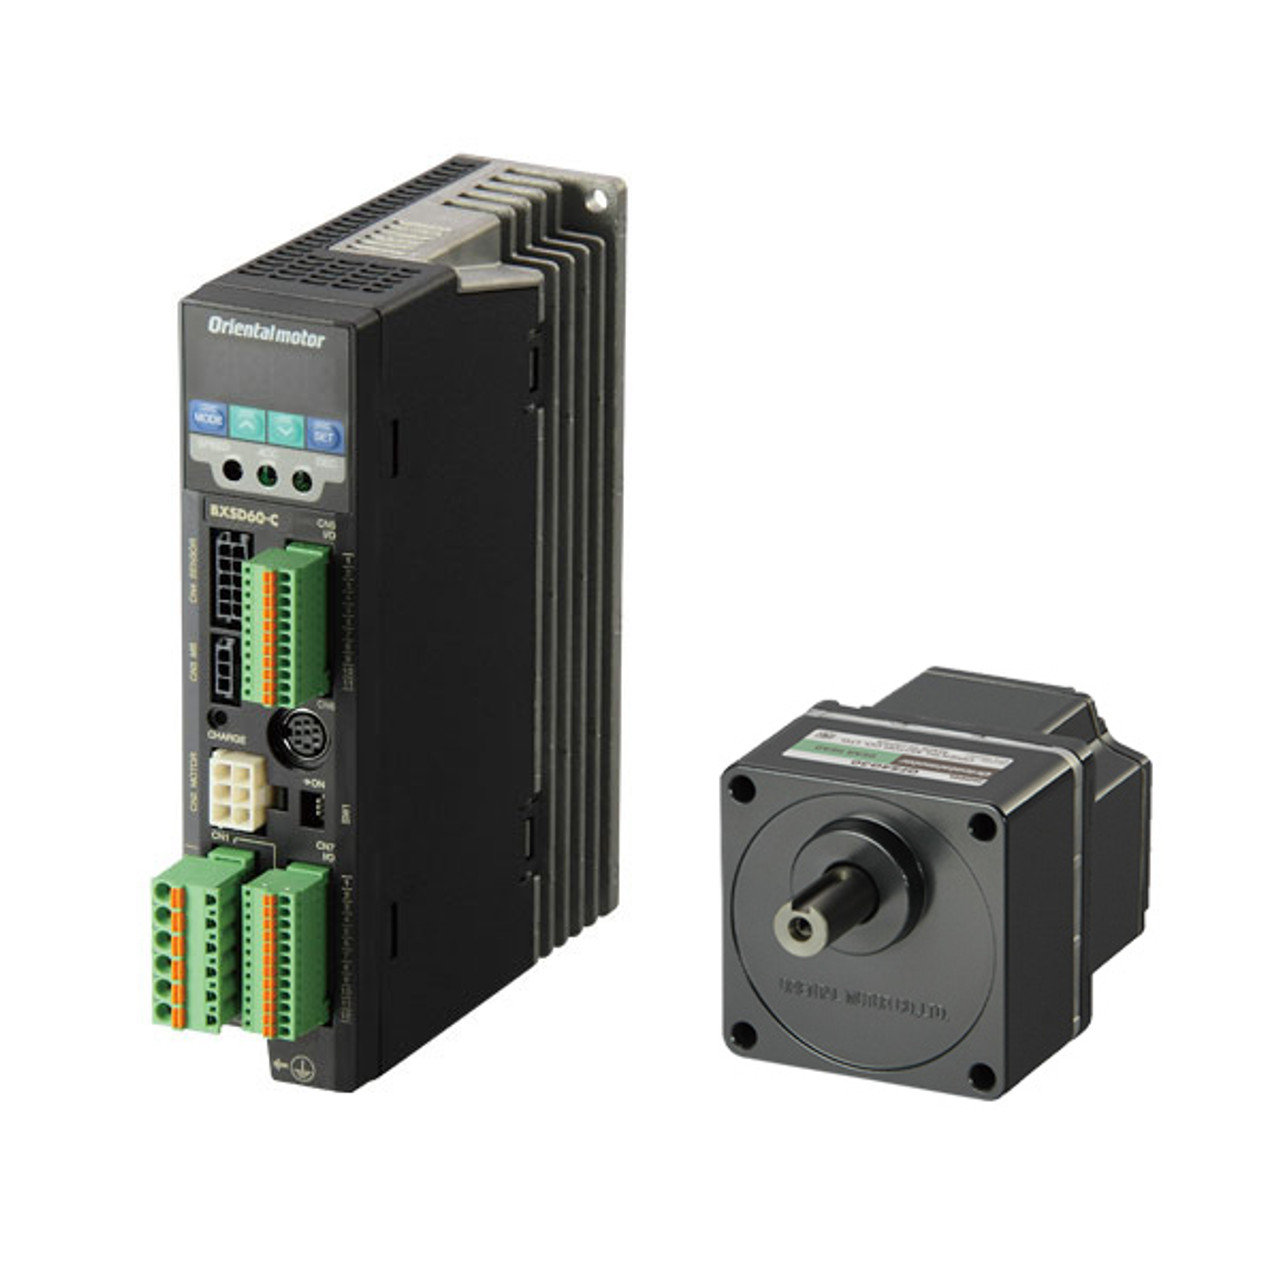 BXM230-50 / BXSD30-A2 - Product Image